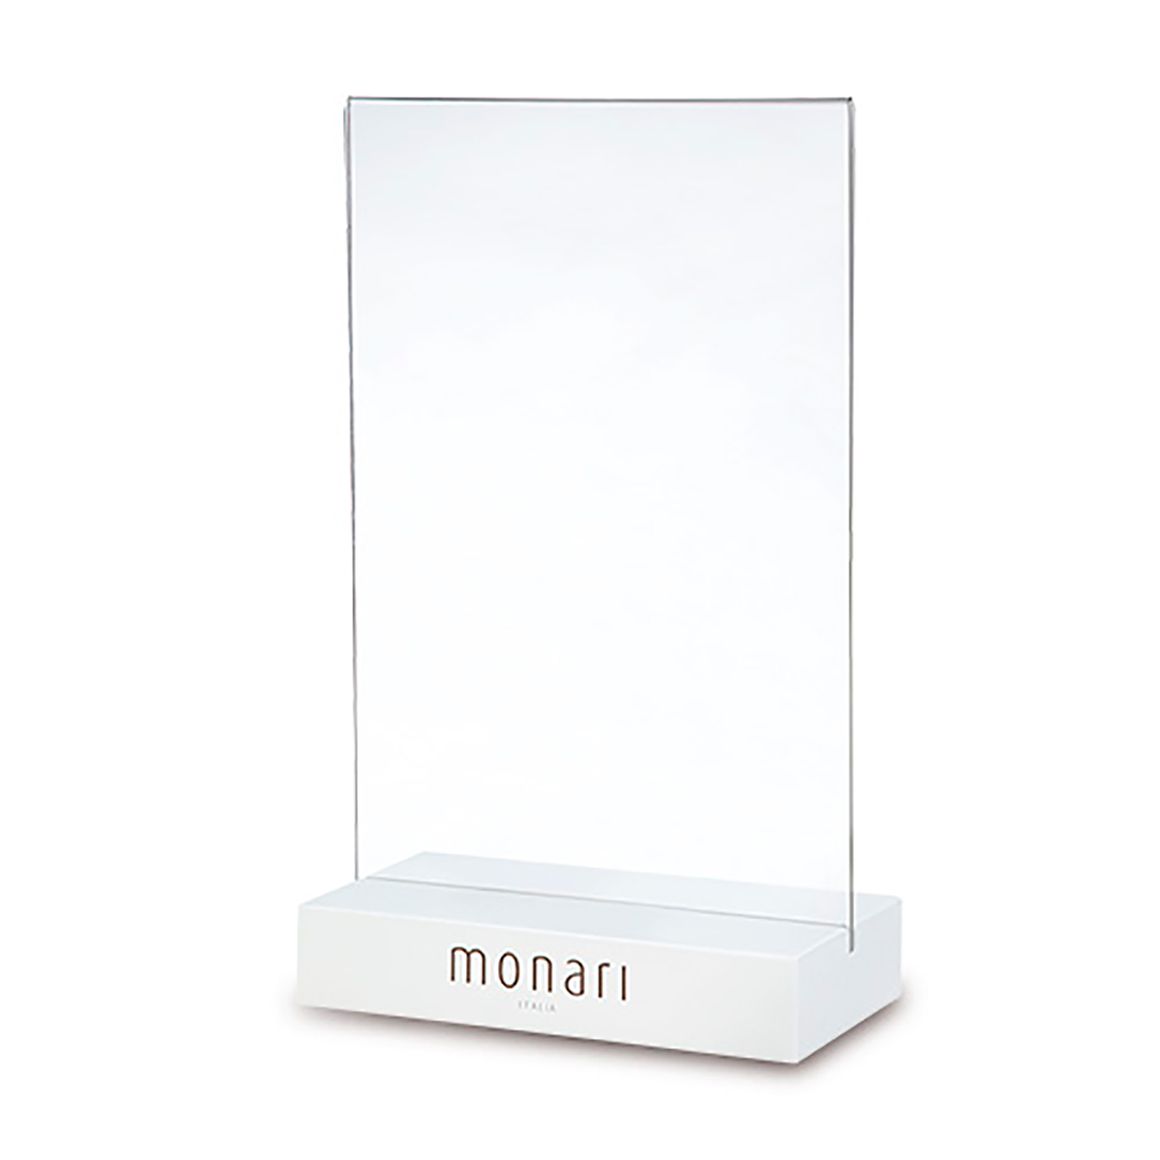 Table stand for Monari